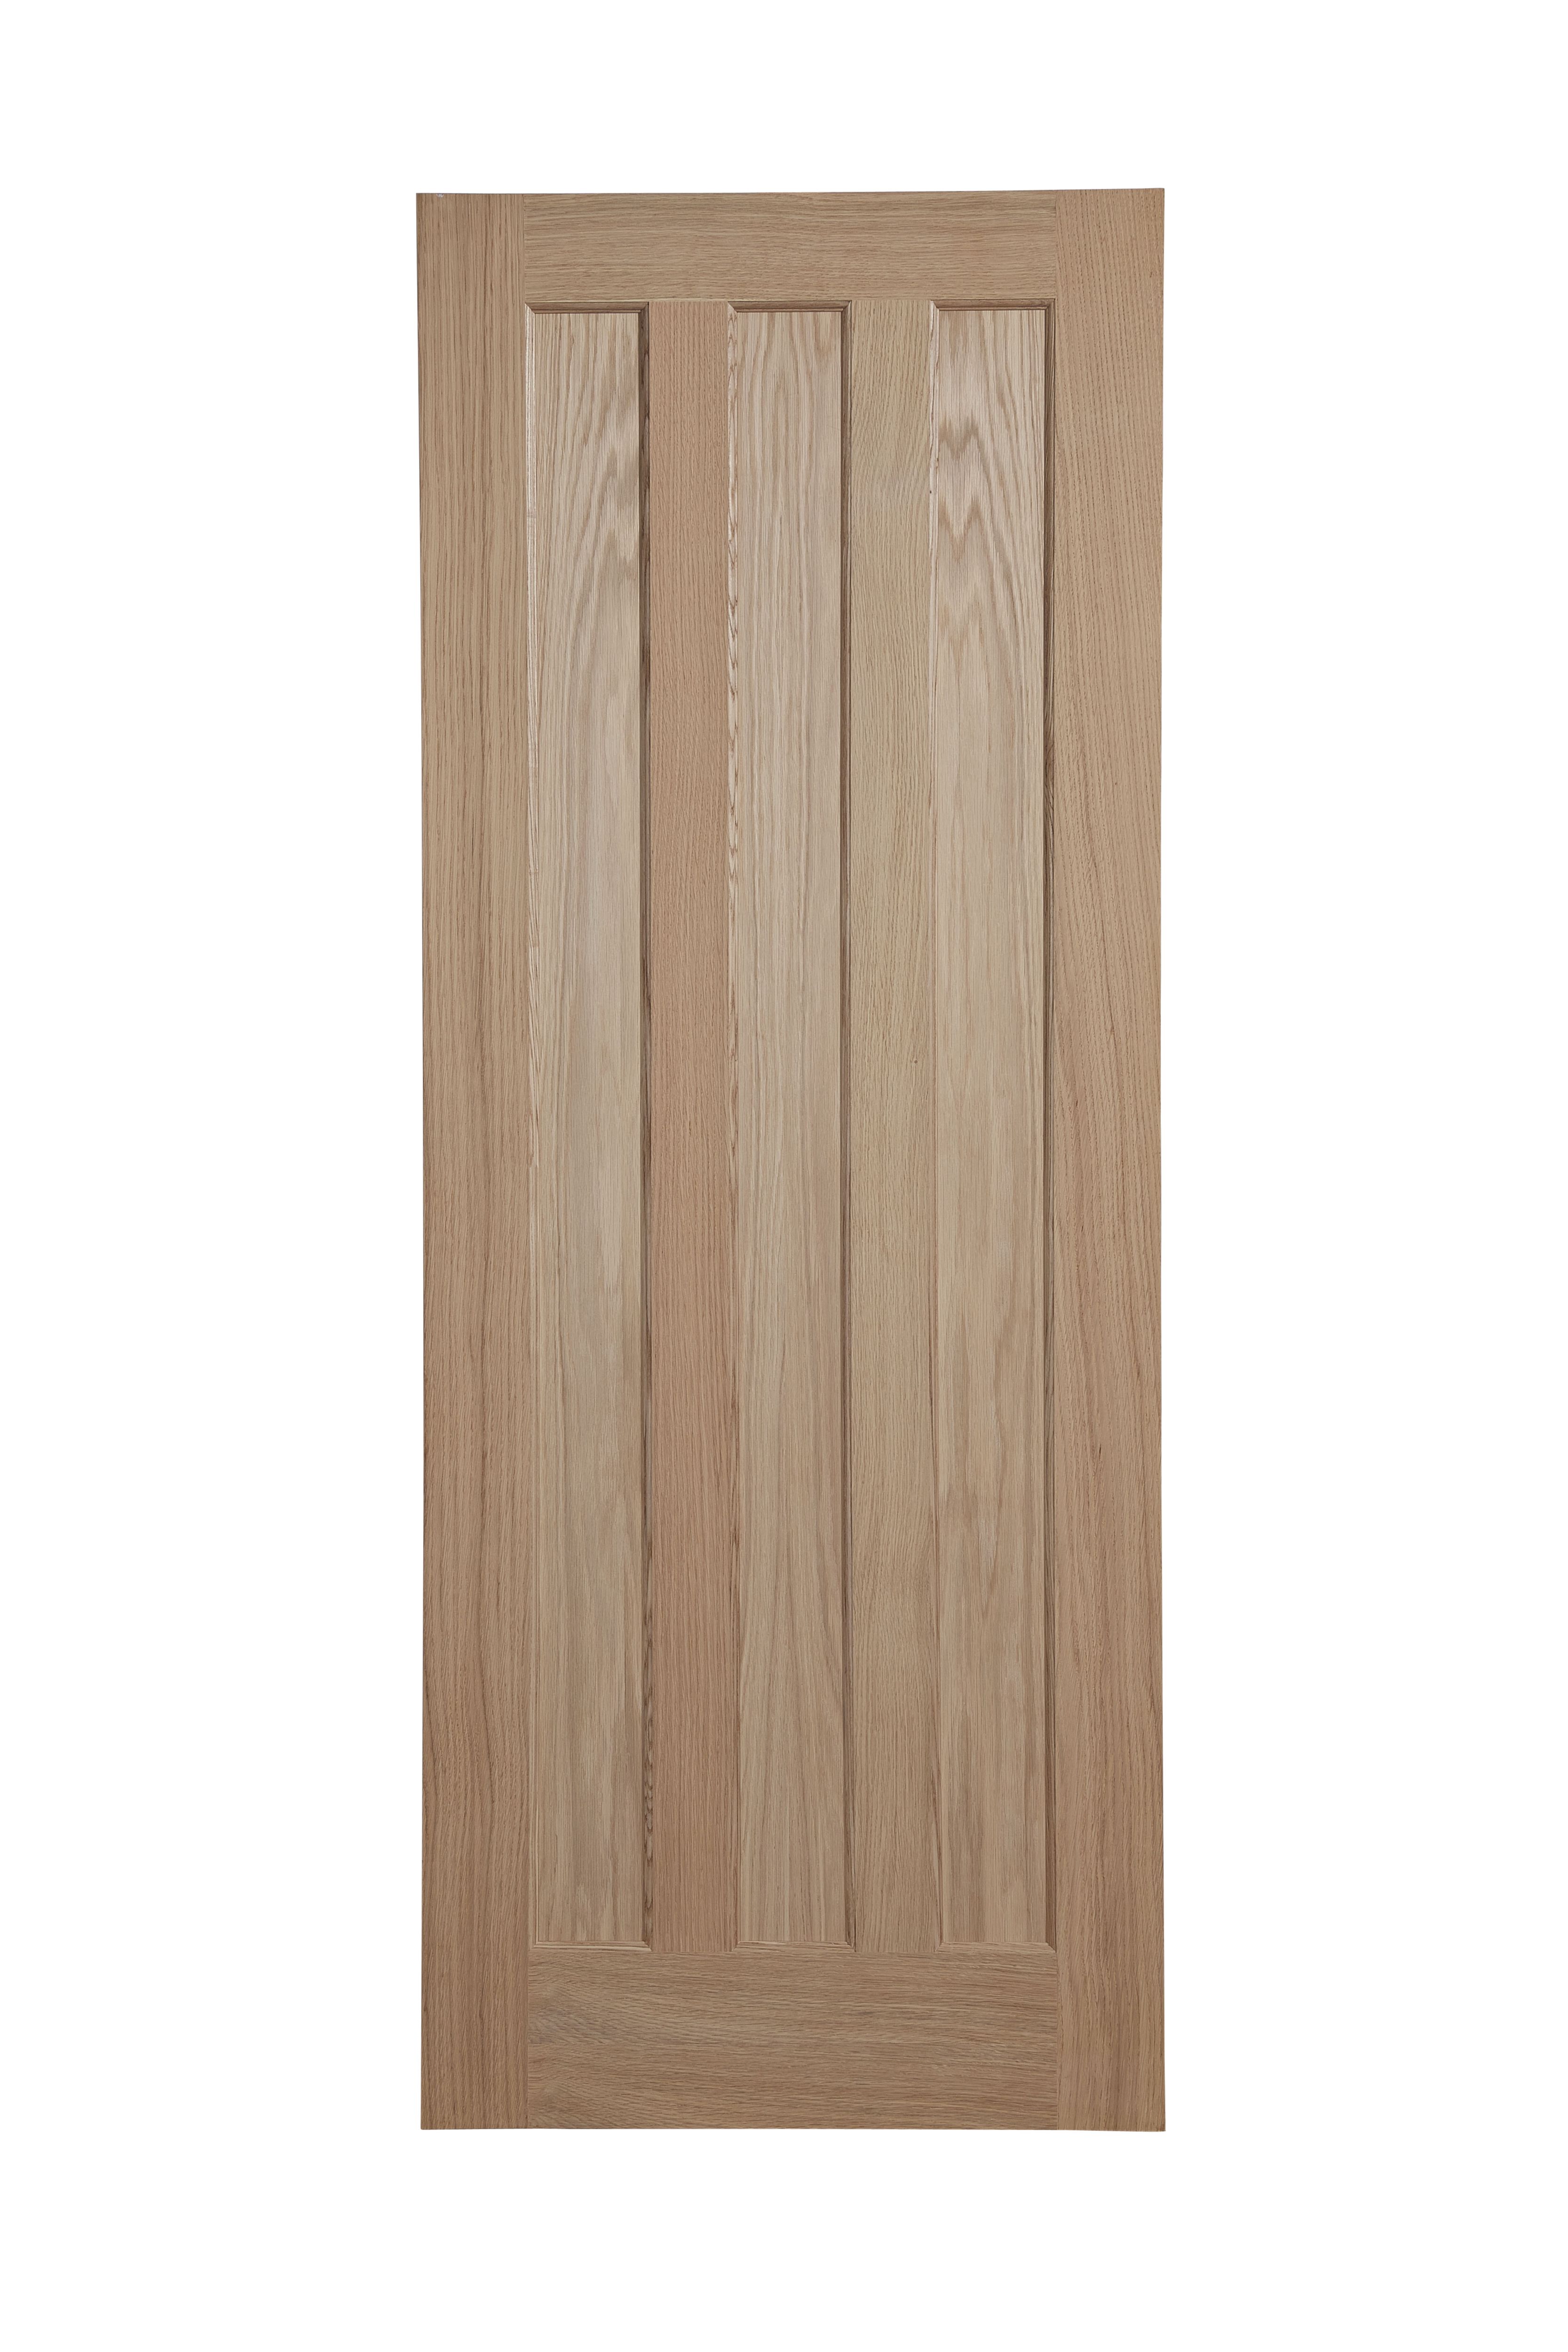 Vertical 3 panel Unglazed Oak veneer Internal Door, (H)1981mm (W)610mm (T)35mm